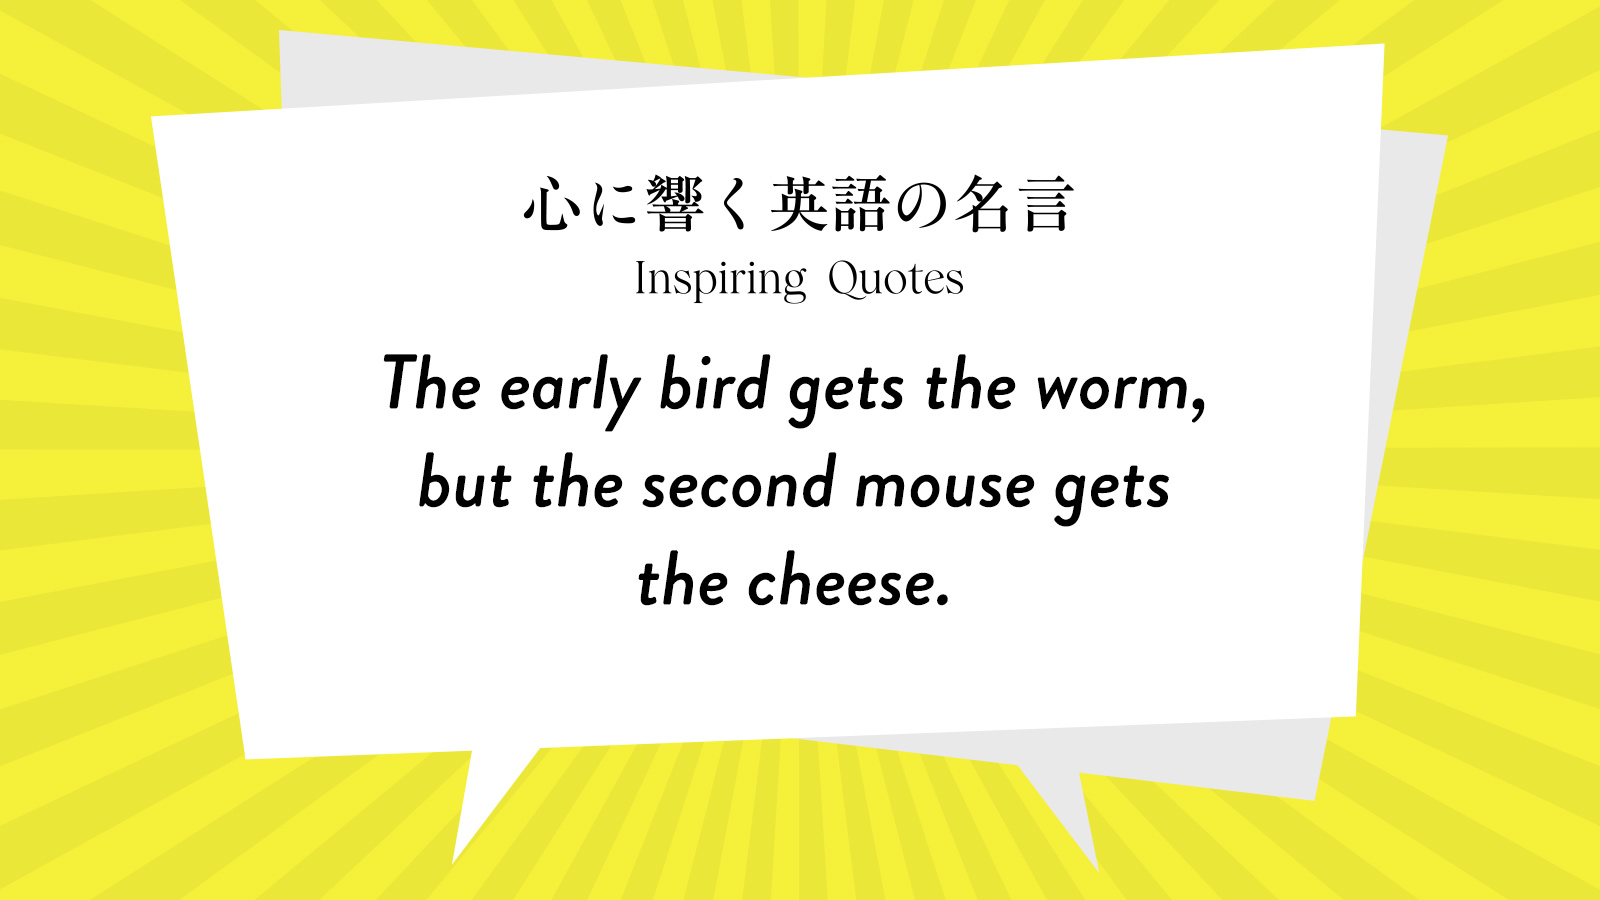 今週の名言 “The early bird gets the worm, but the second mouse gets the cheese.” | Inspiring Quotes: 心に響く英語の名言